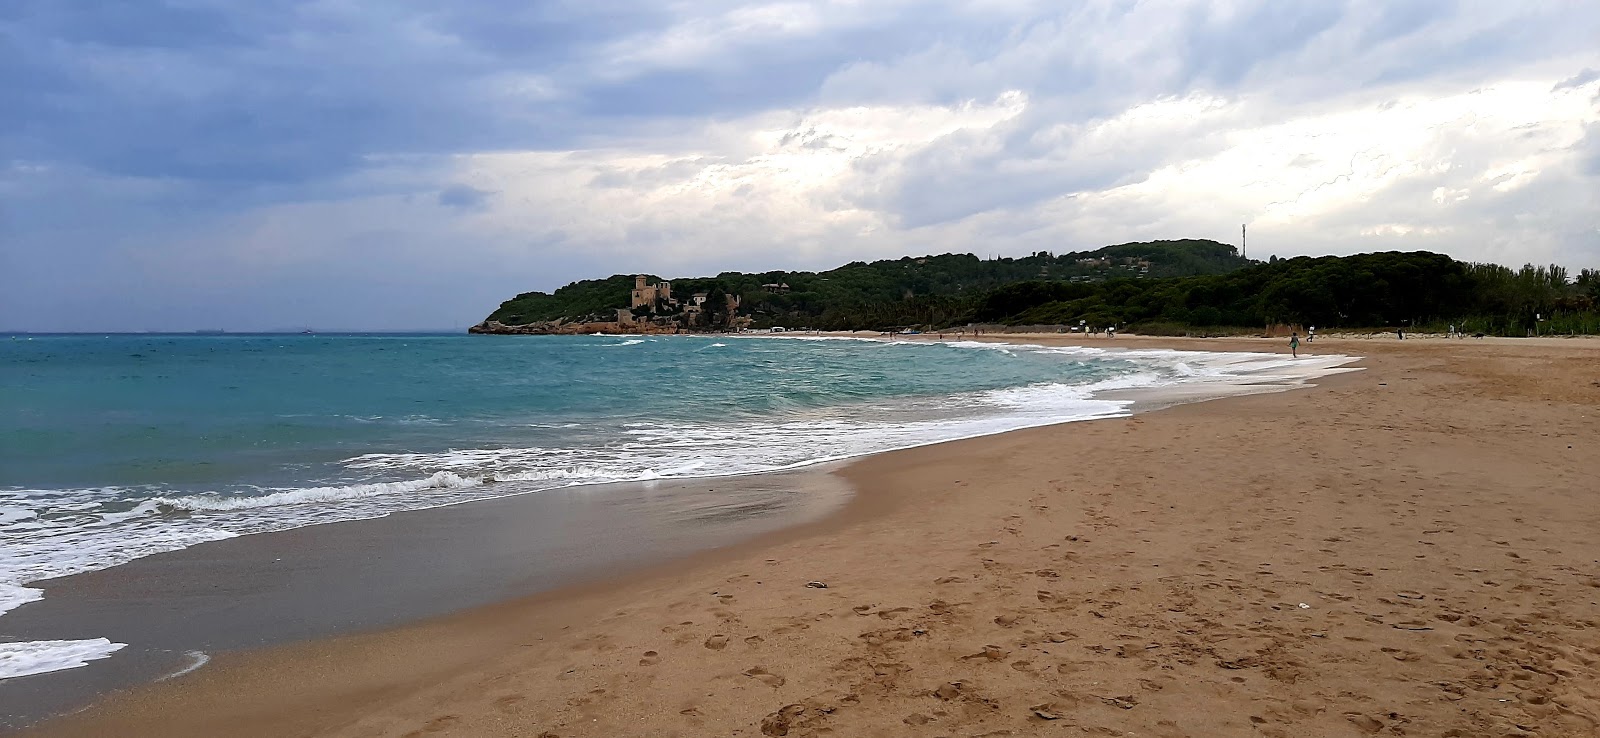 Fotografie cu Plaja Tamarit cu o suprafață de nisip strălucitor